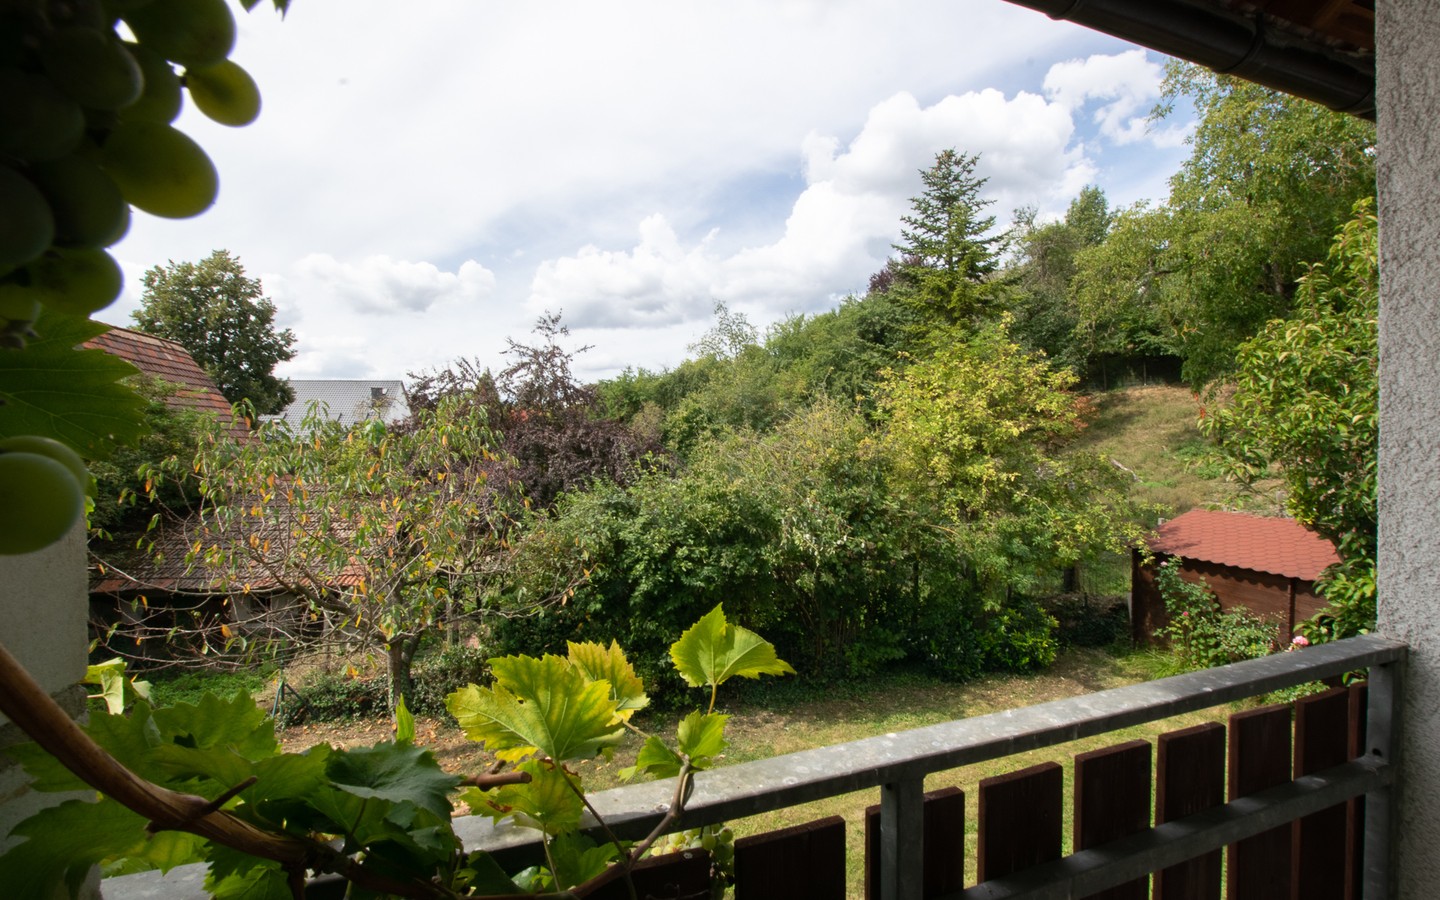 Ausblick Balkon - Platz für die ganze Familie! Großzügiges Wohnhaus mit Einliegerwohnung und idyllischem Garten